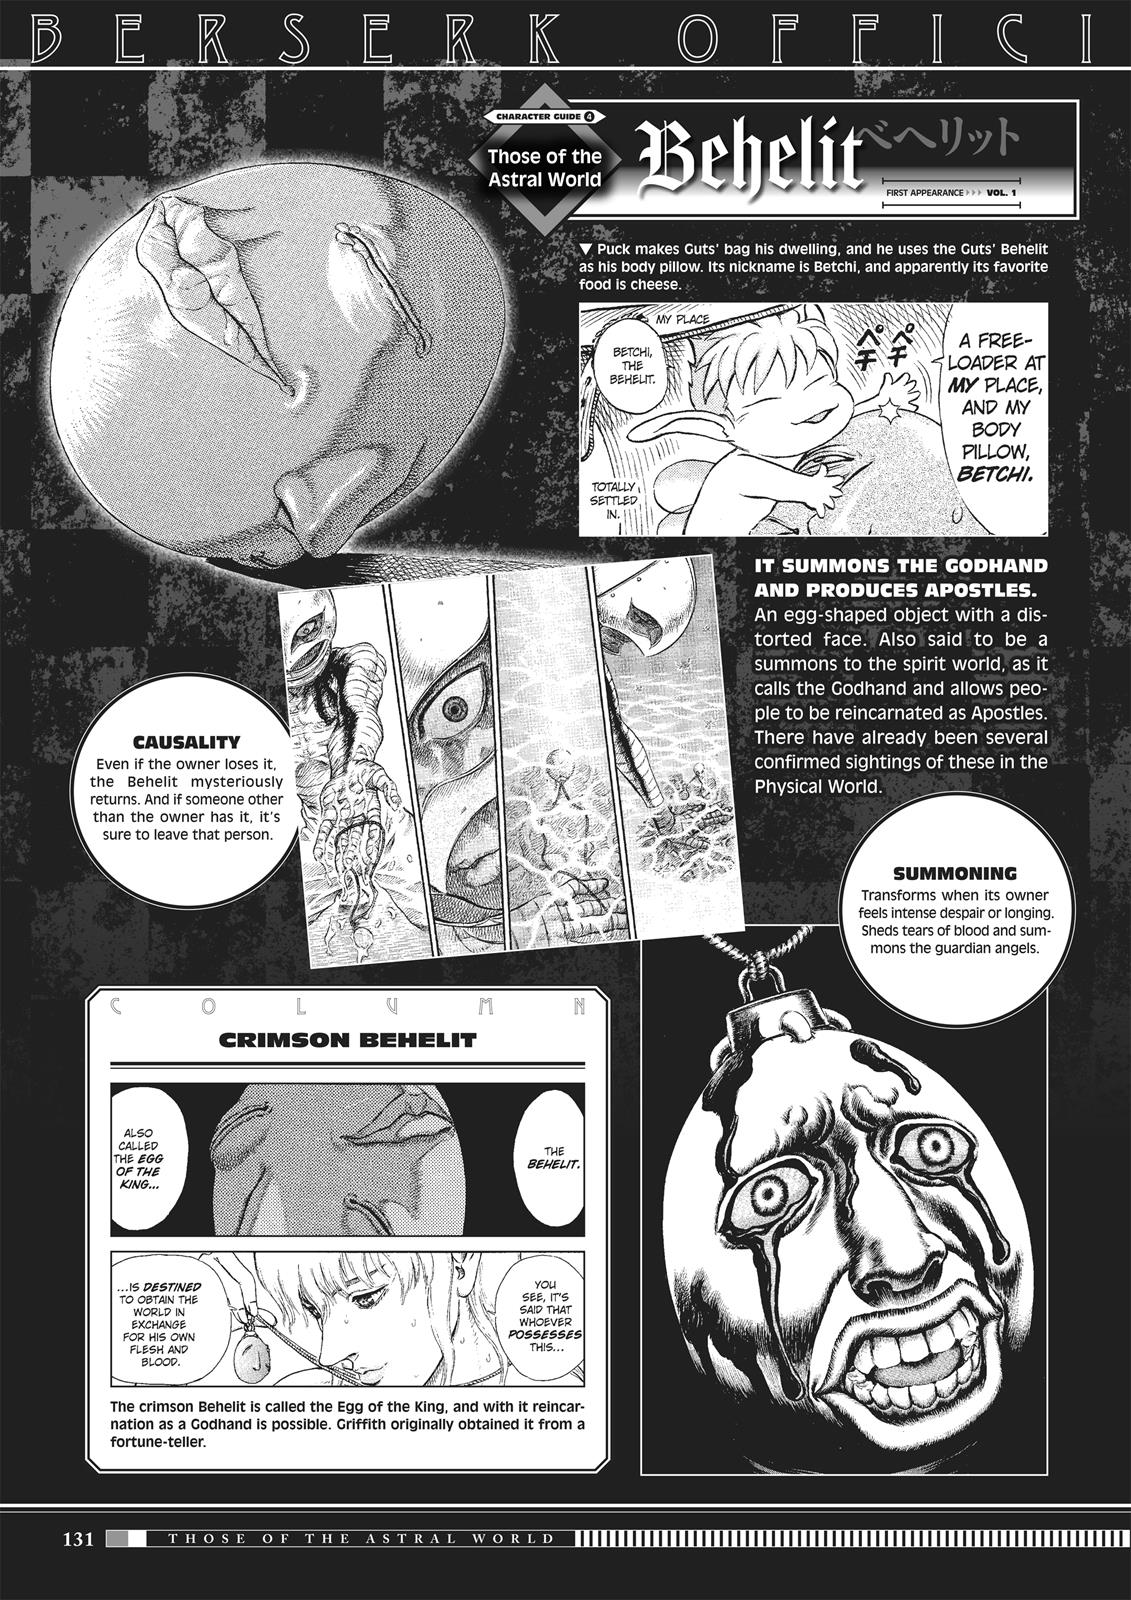 Berserk Manga Chapter 350.5 image 129